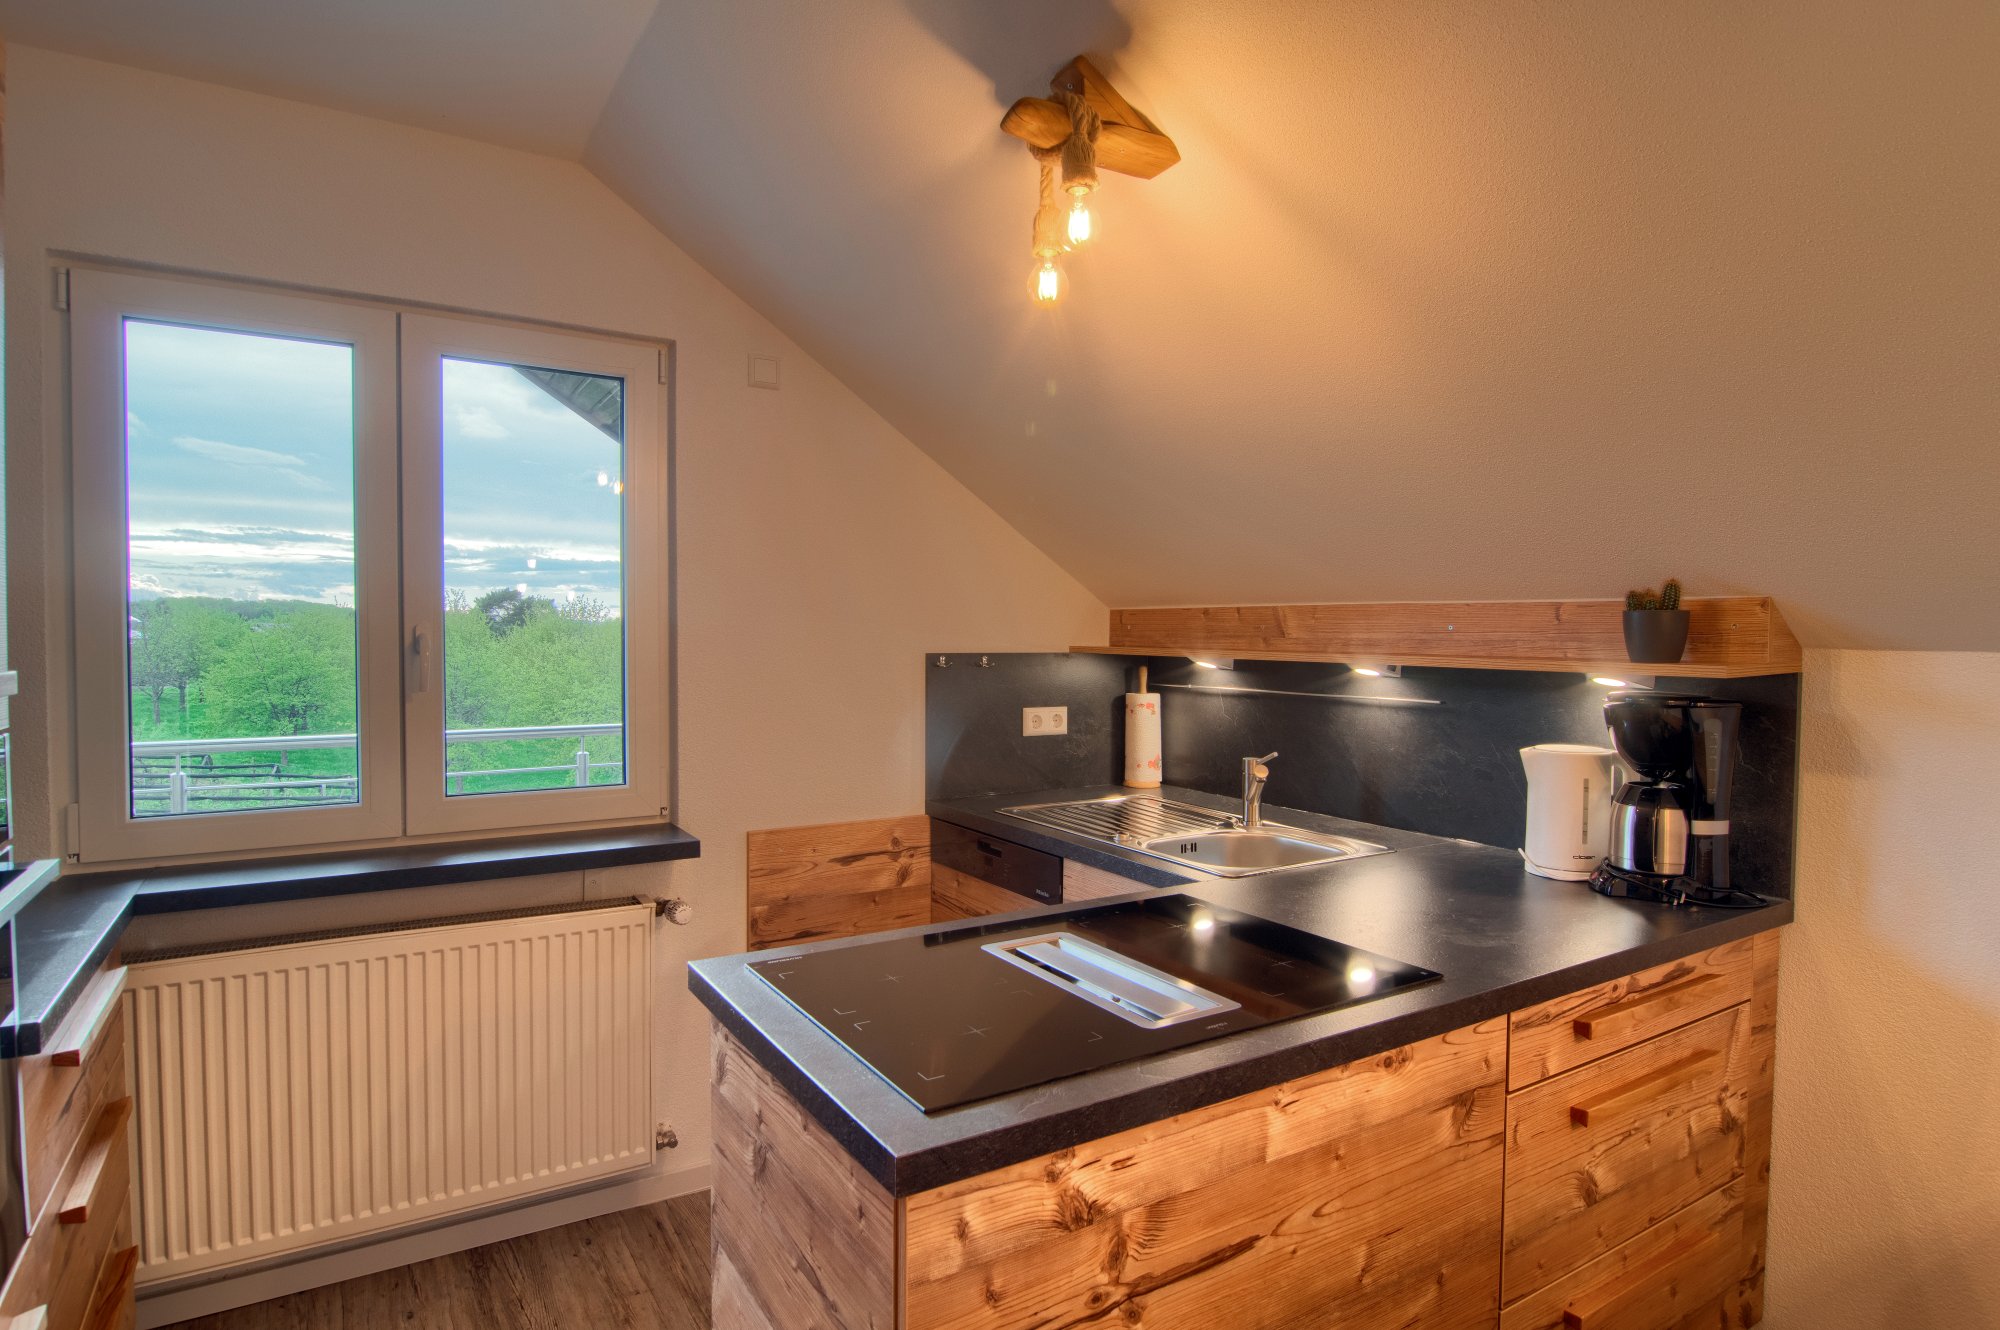 Ferienwohnung Vogesenblick in Durbach Blick 2 in die Küche, rustikales Holz modern umgesetzt